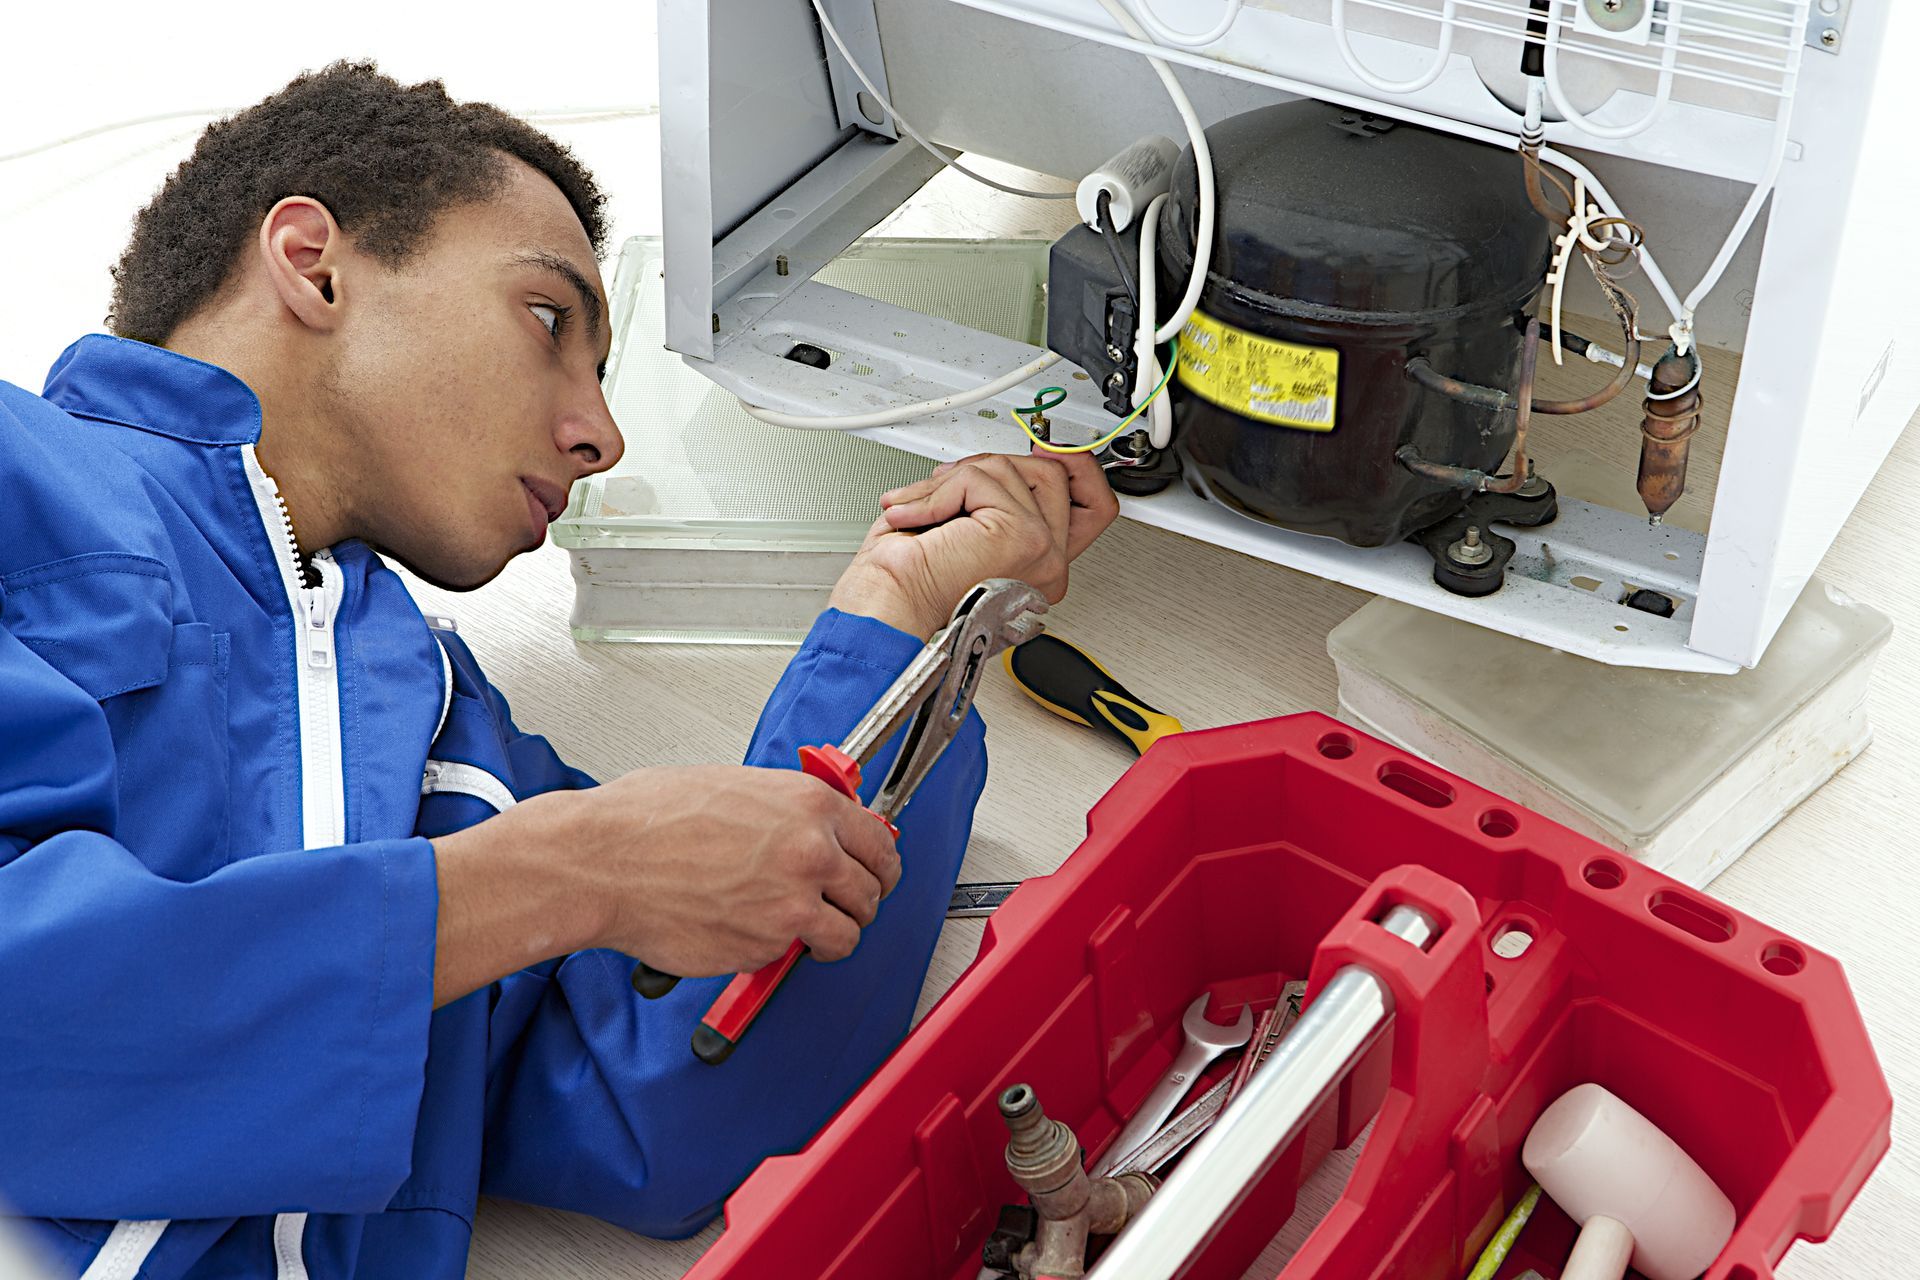 Repair man fixing an appliance